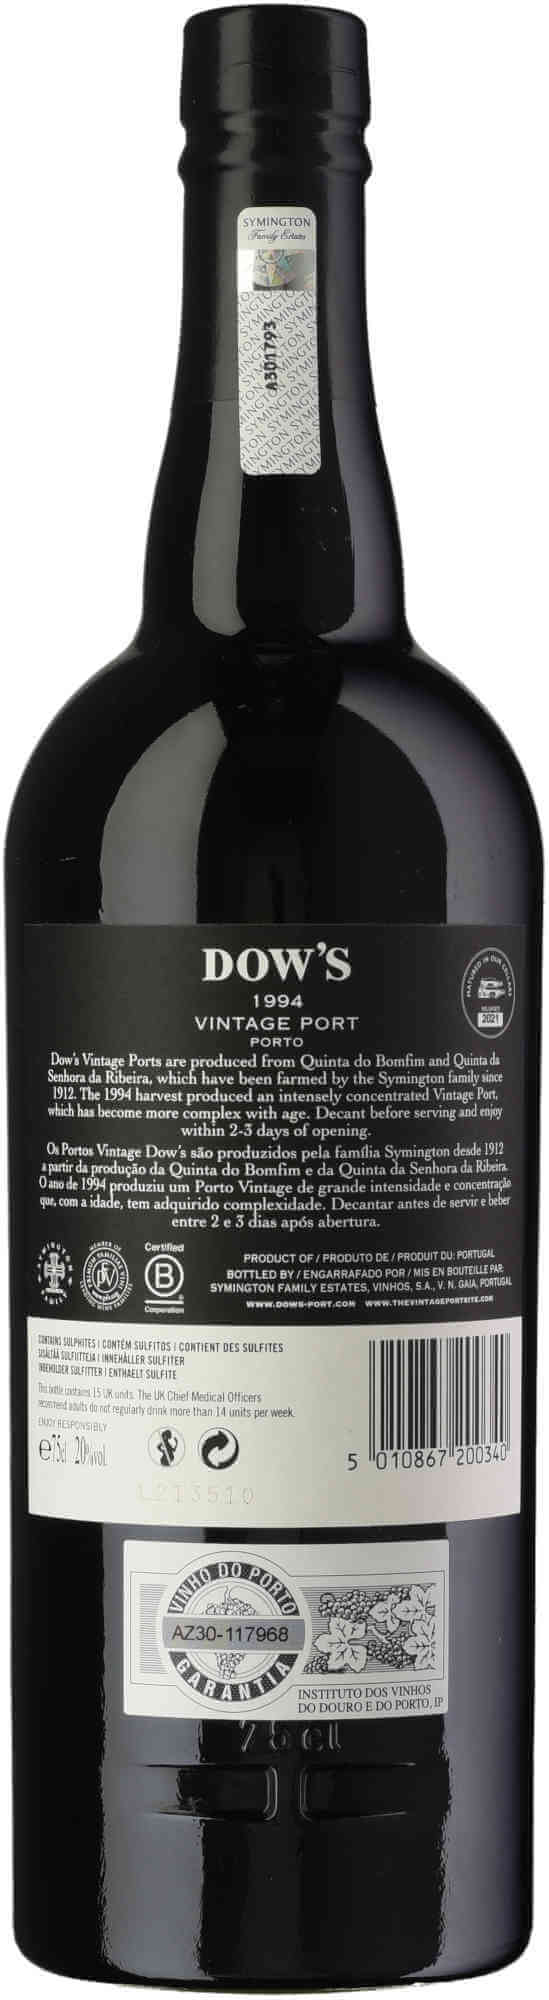 Dows-Vintage-Port-1994-back